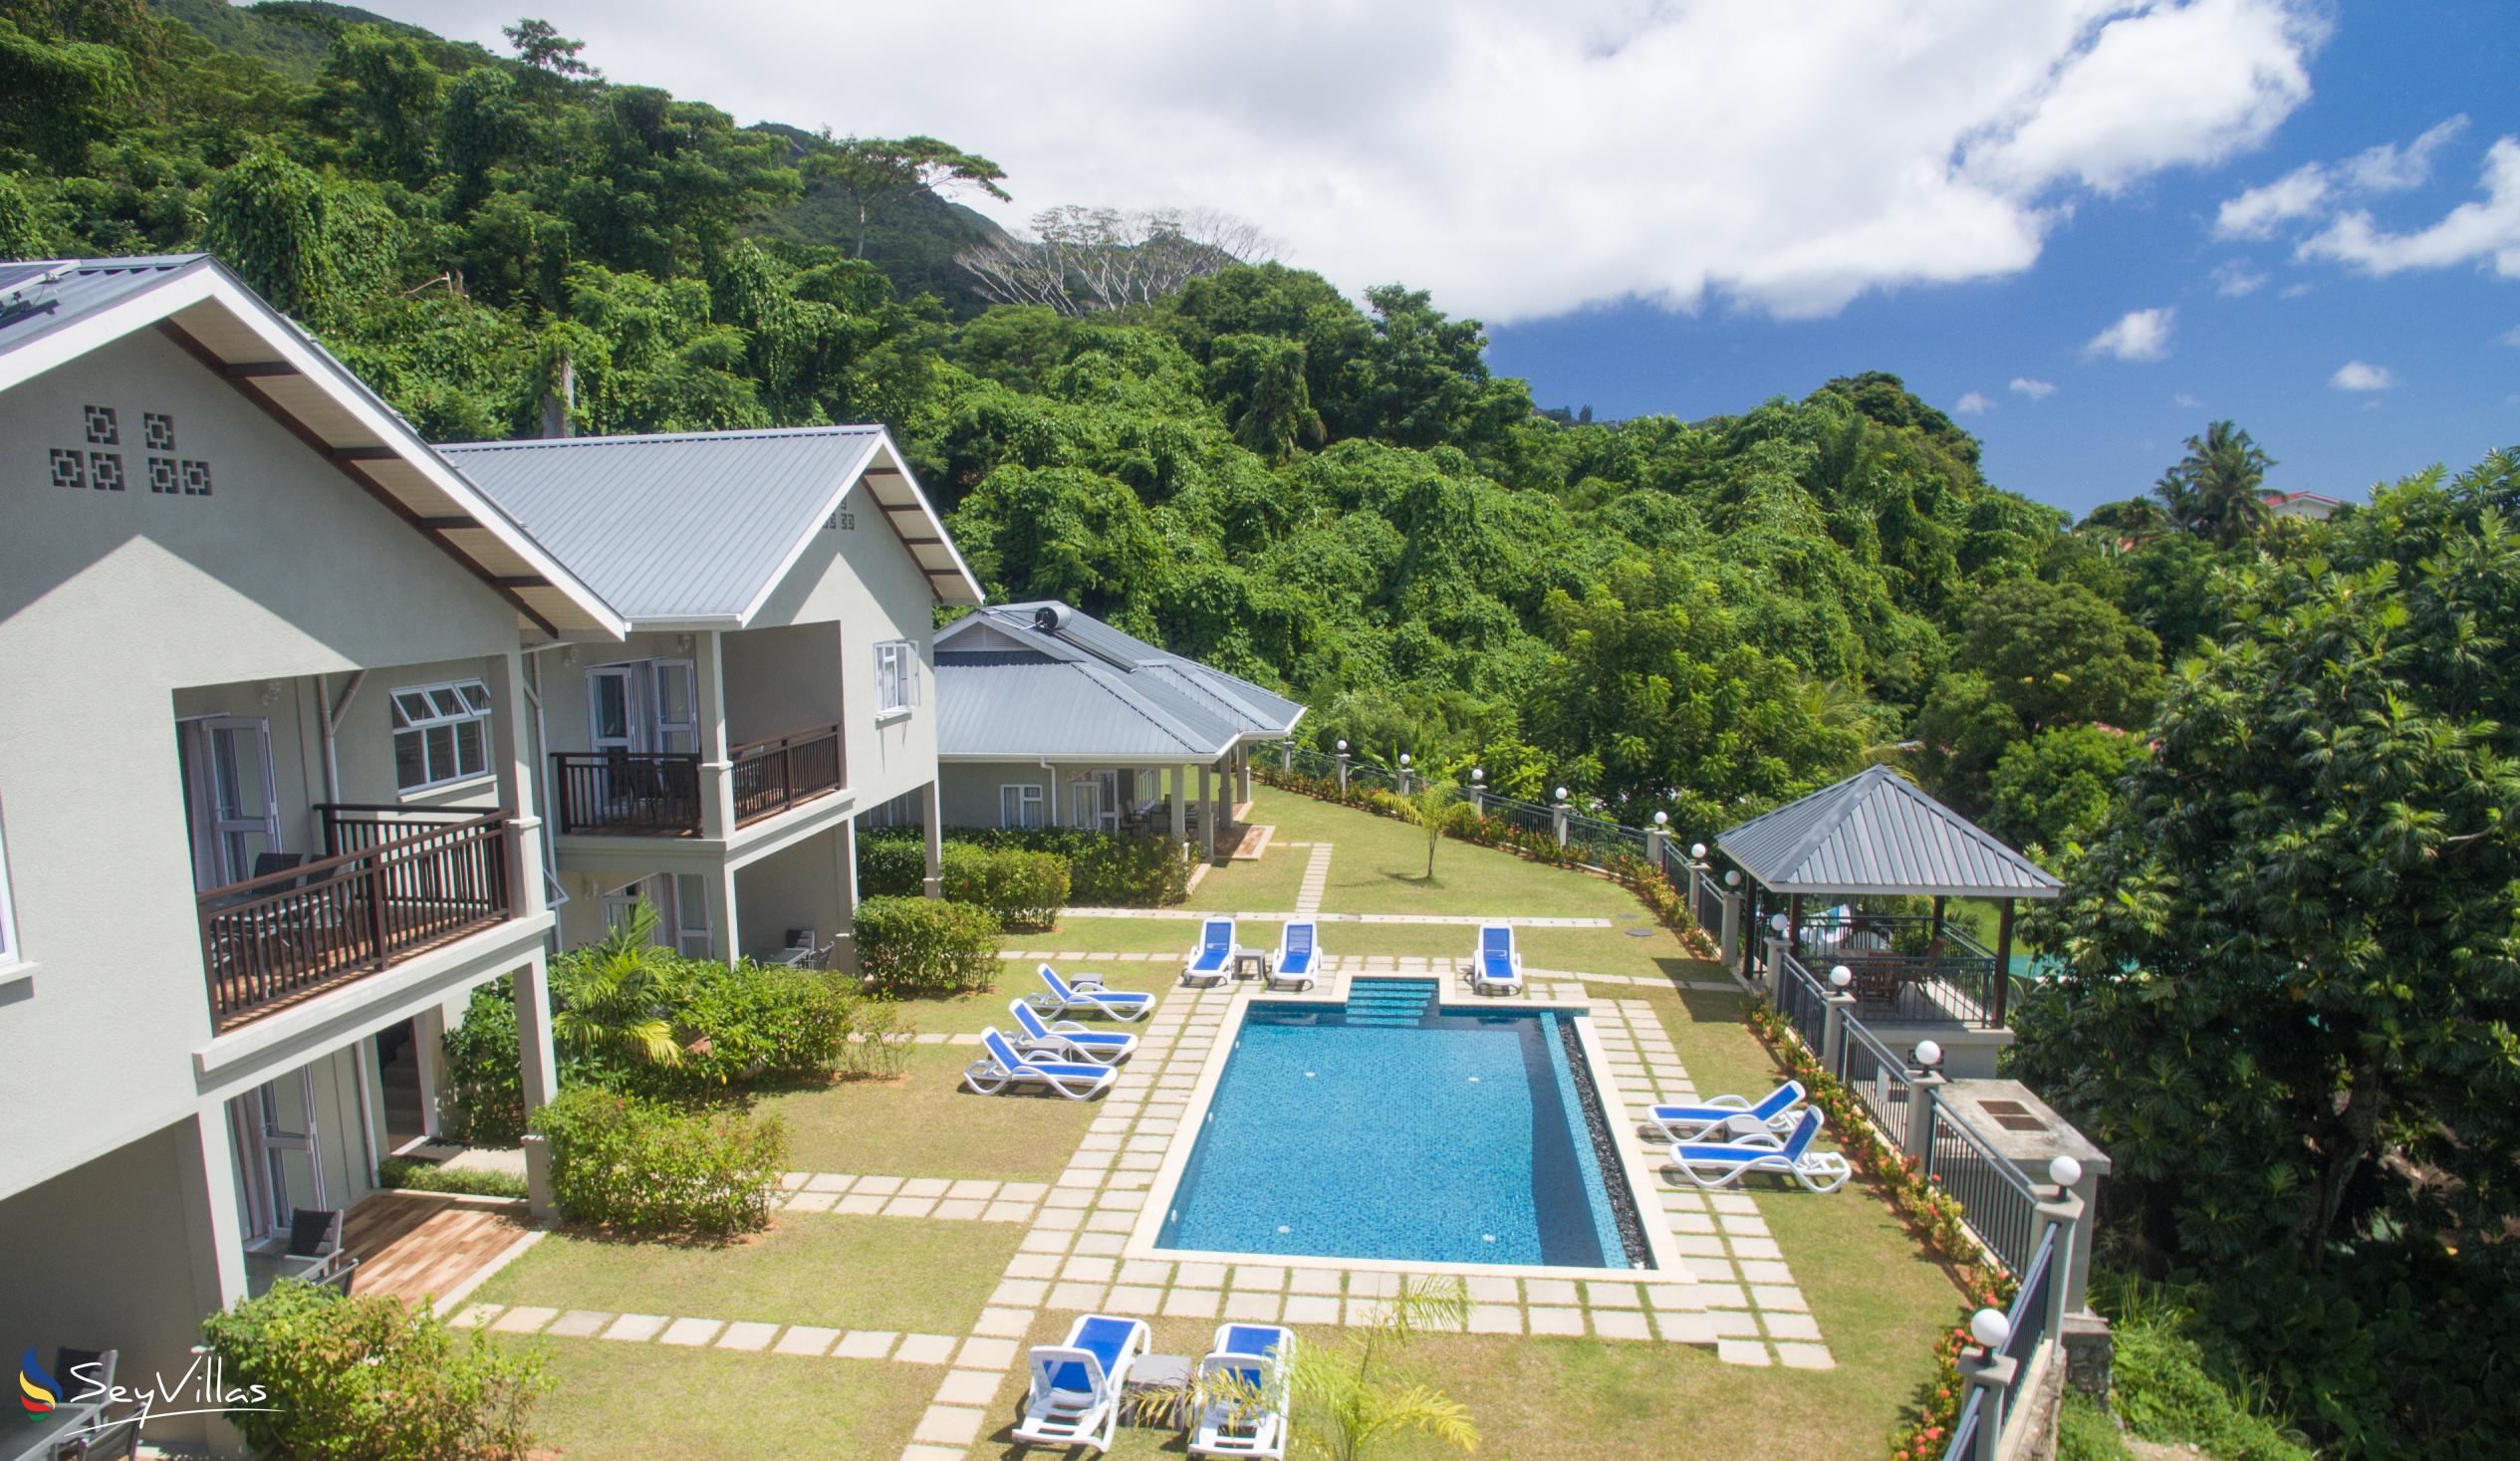 Foto 3: Bambous River Lodge - Aussenbereich - Mahé (Seychellen)